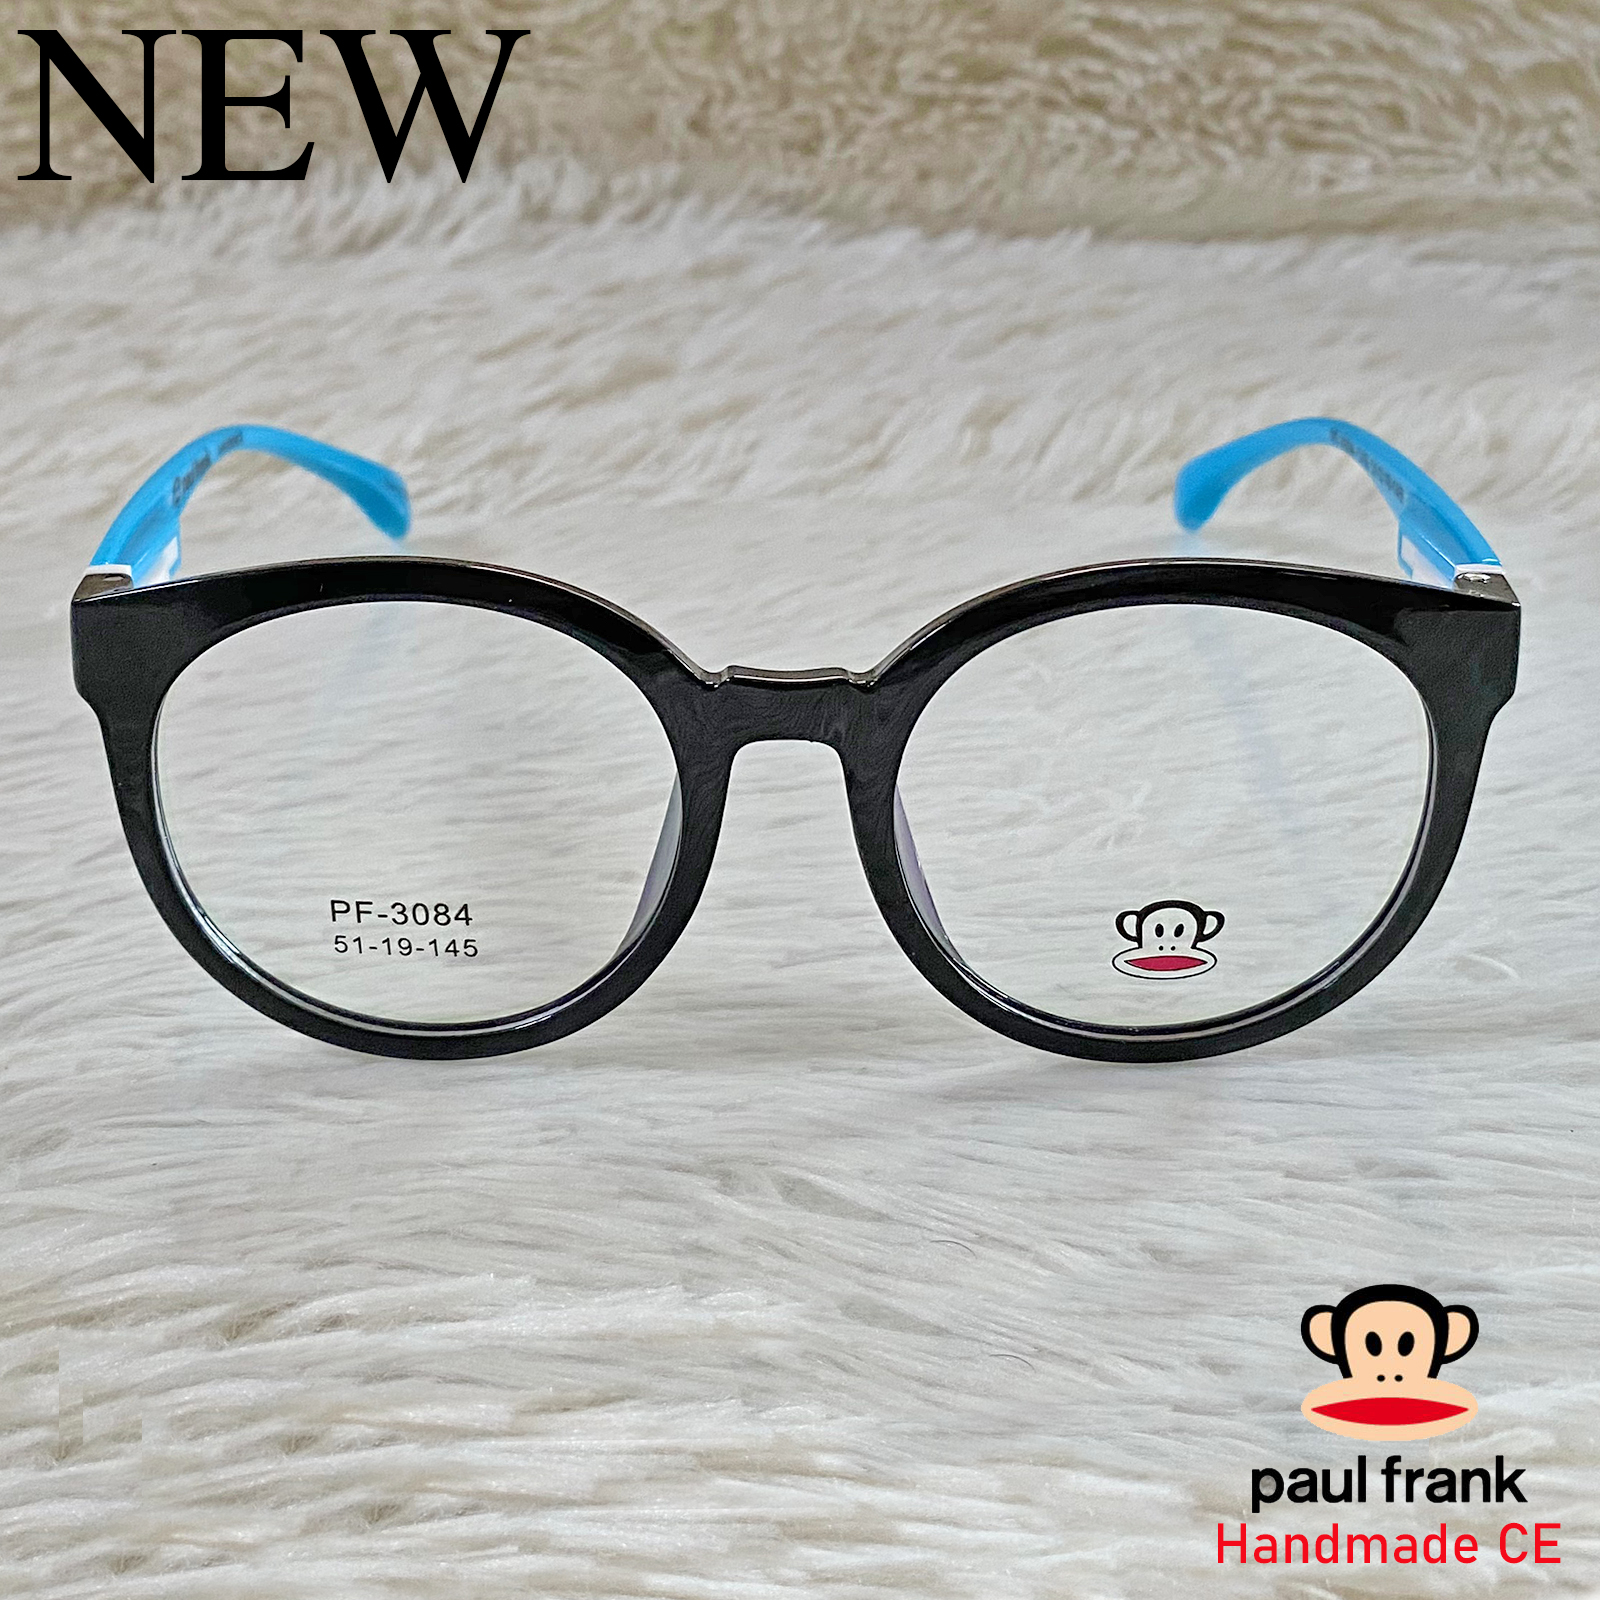 Handmade แว่นตาสำหรับตัดเลนส์ สายตา กรอบแว่นตา ชาย หญิง Fashion รุ่น 3084 สีดำขาฟ้า กรอบเต็ม ทรงรี ขาข้อต่อ วัสดุ TR 90 รับตัดเลนส์ทุกชนิด